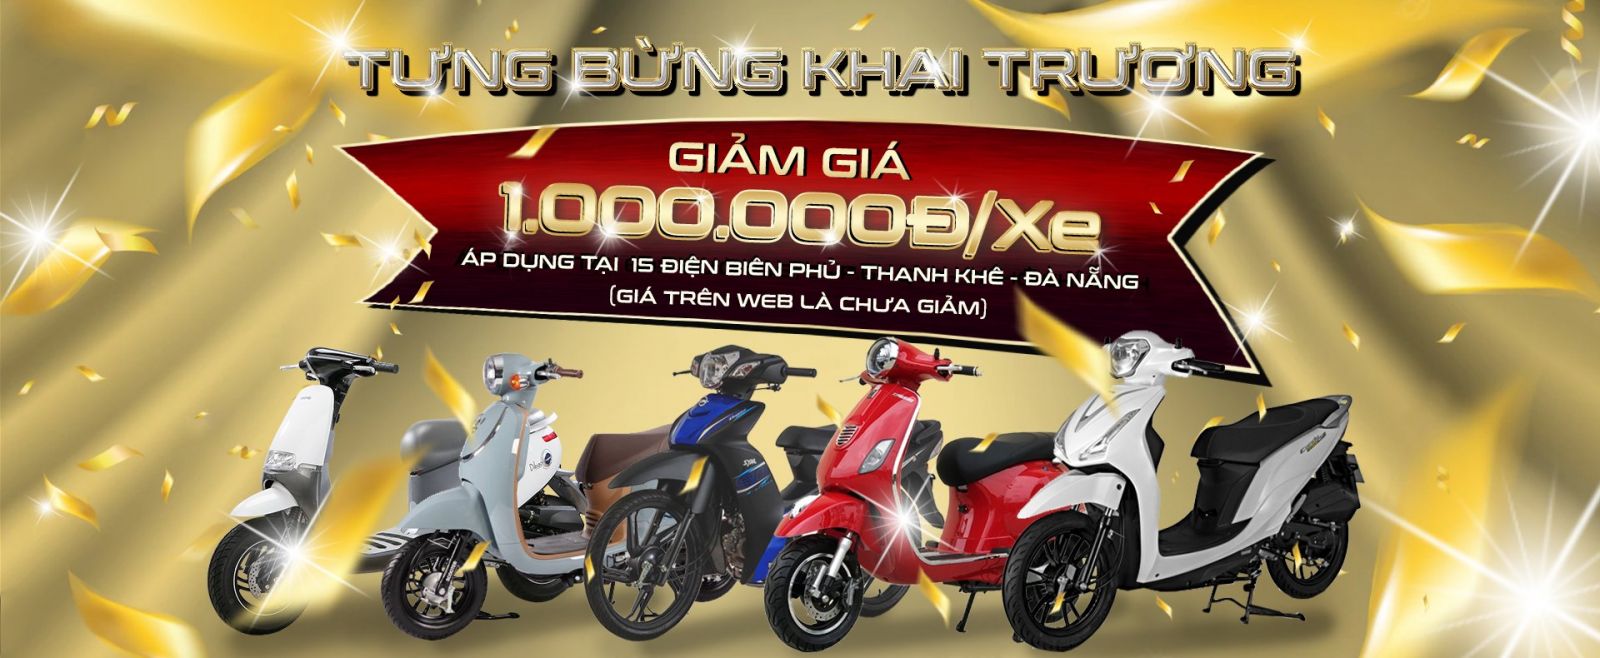 Giảm ngay 1.000.000 đồng khai trương chi nhánh mới tại Quận Thanh Khê - Đà Nẵng